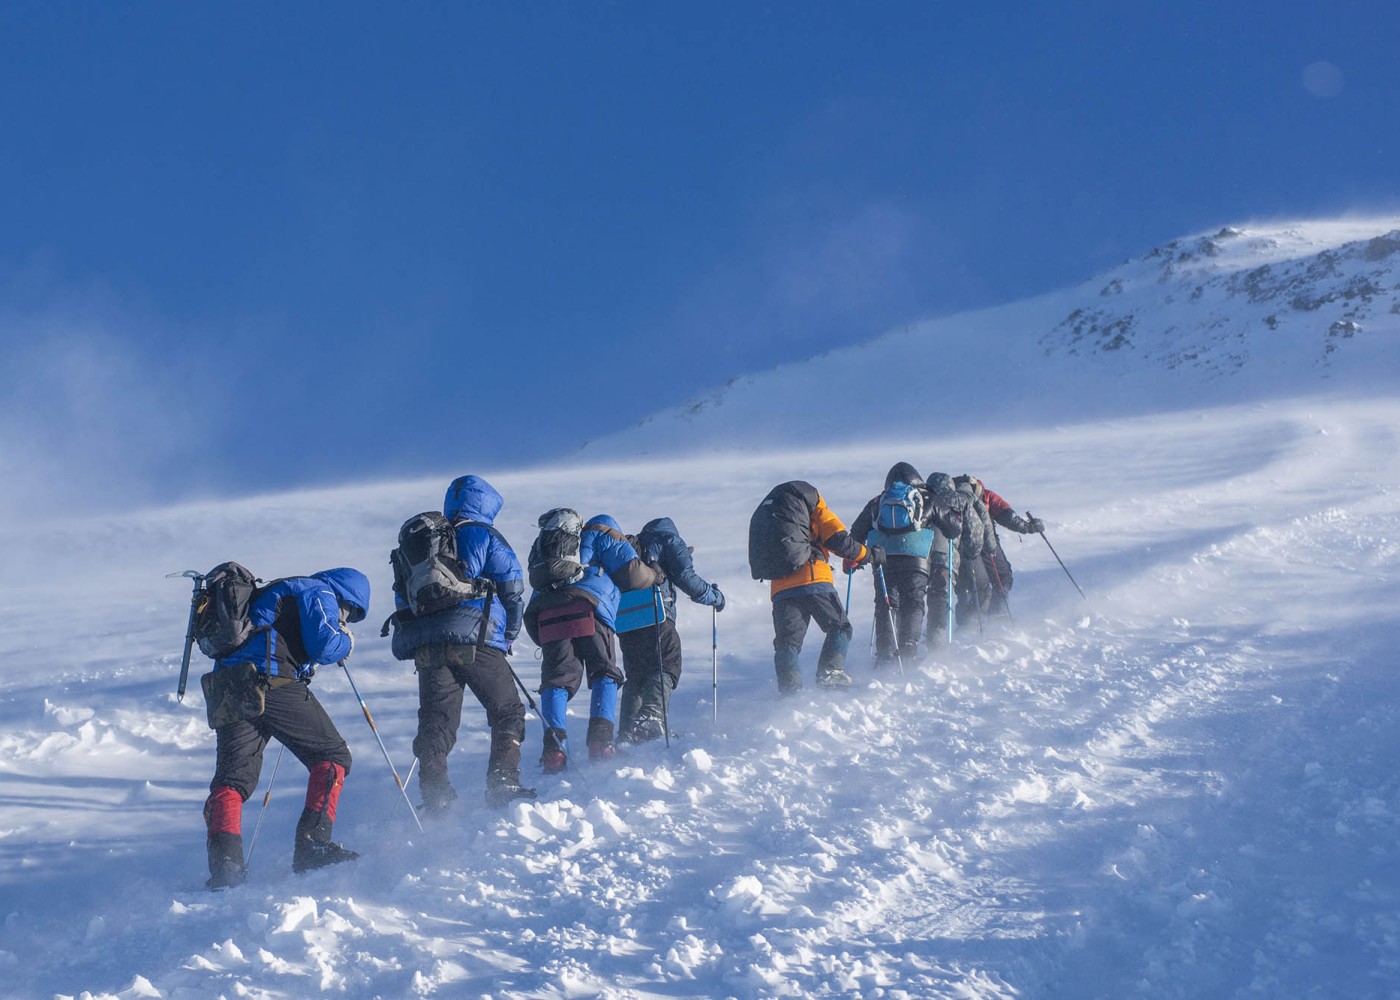 6 nəfərlik qrup Elbrus dağında itkin düşdü